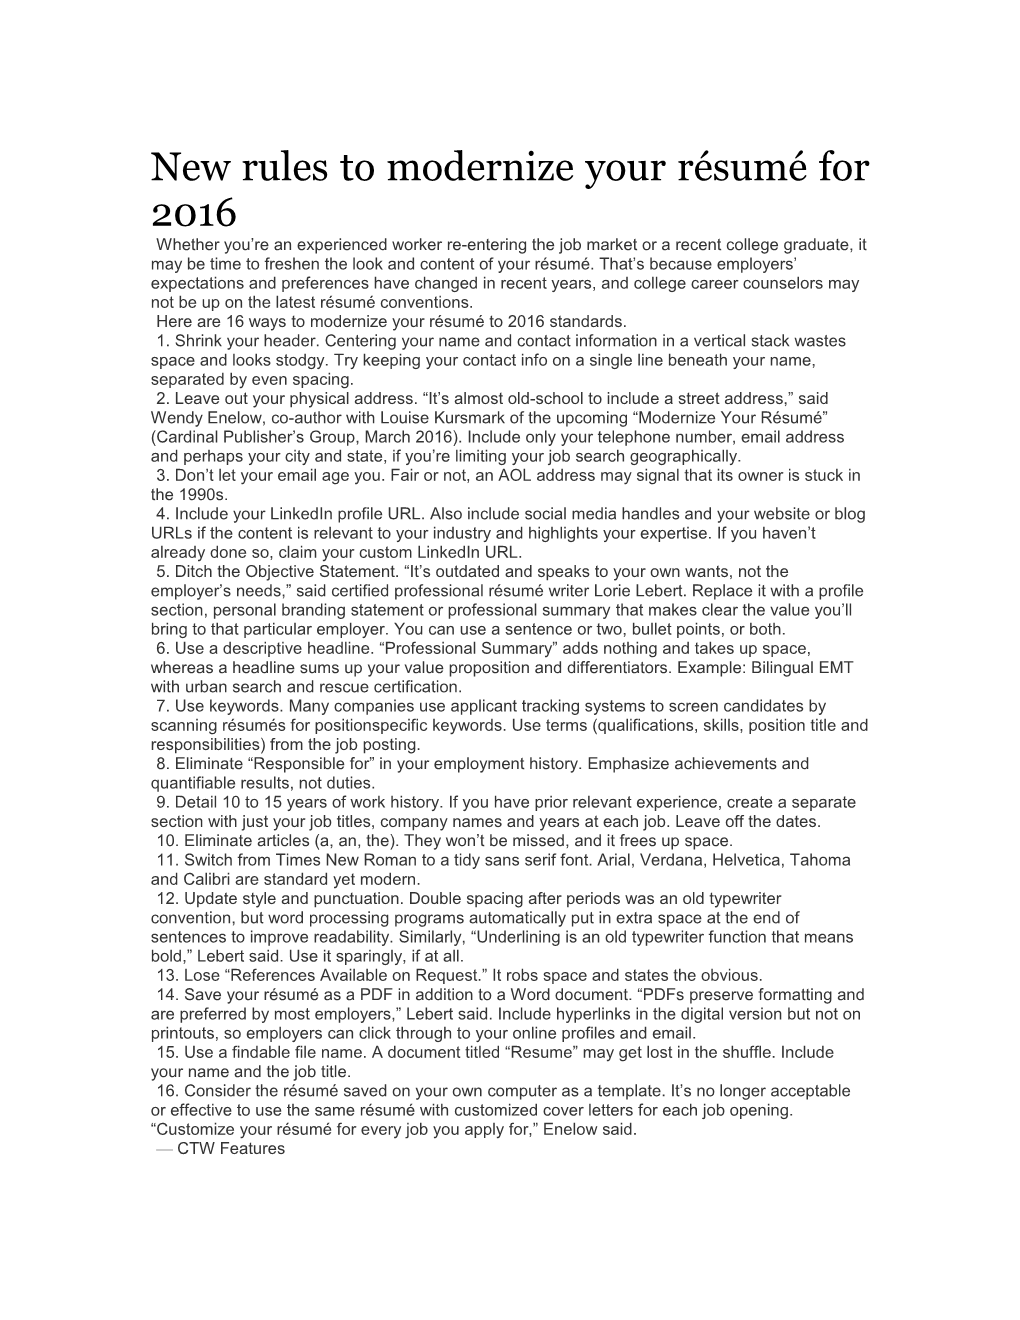 New Rules to Modernize Your Résumé for 2016